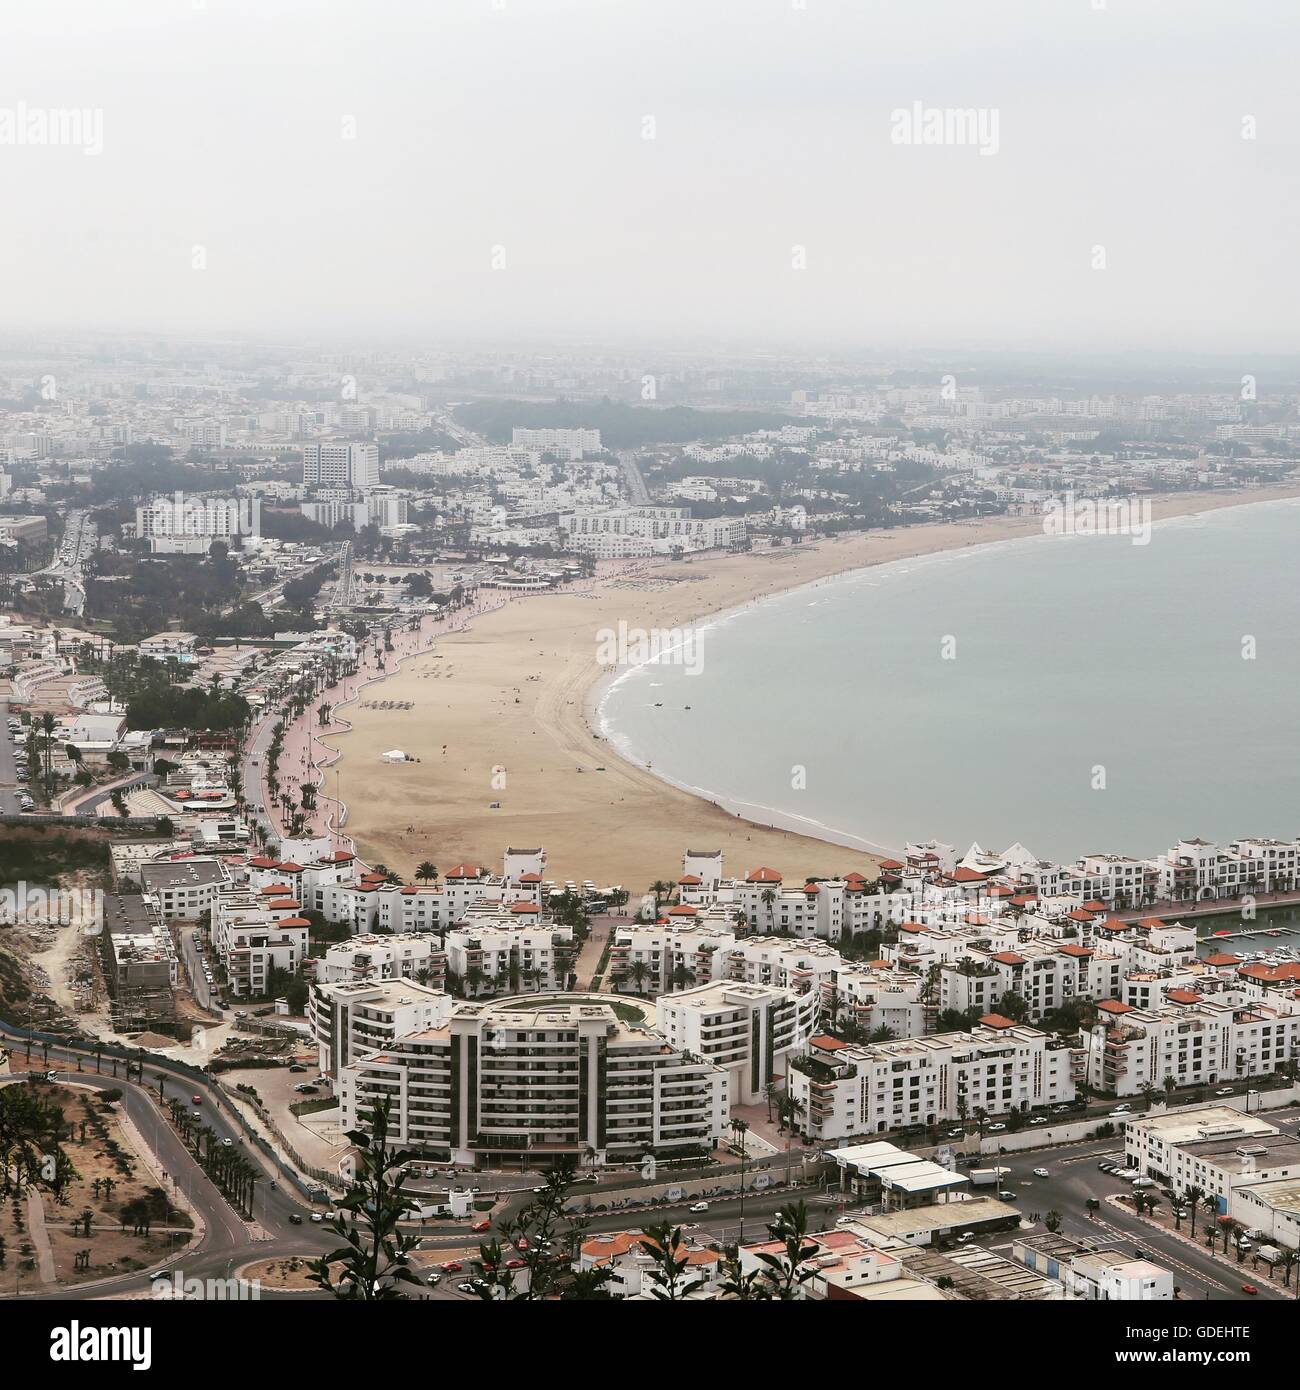 City skyline and beach, Agadir, Morocco Stock Photo